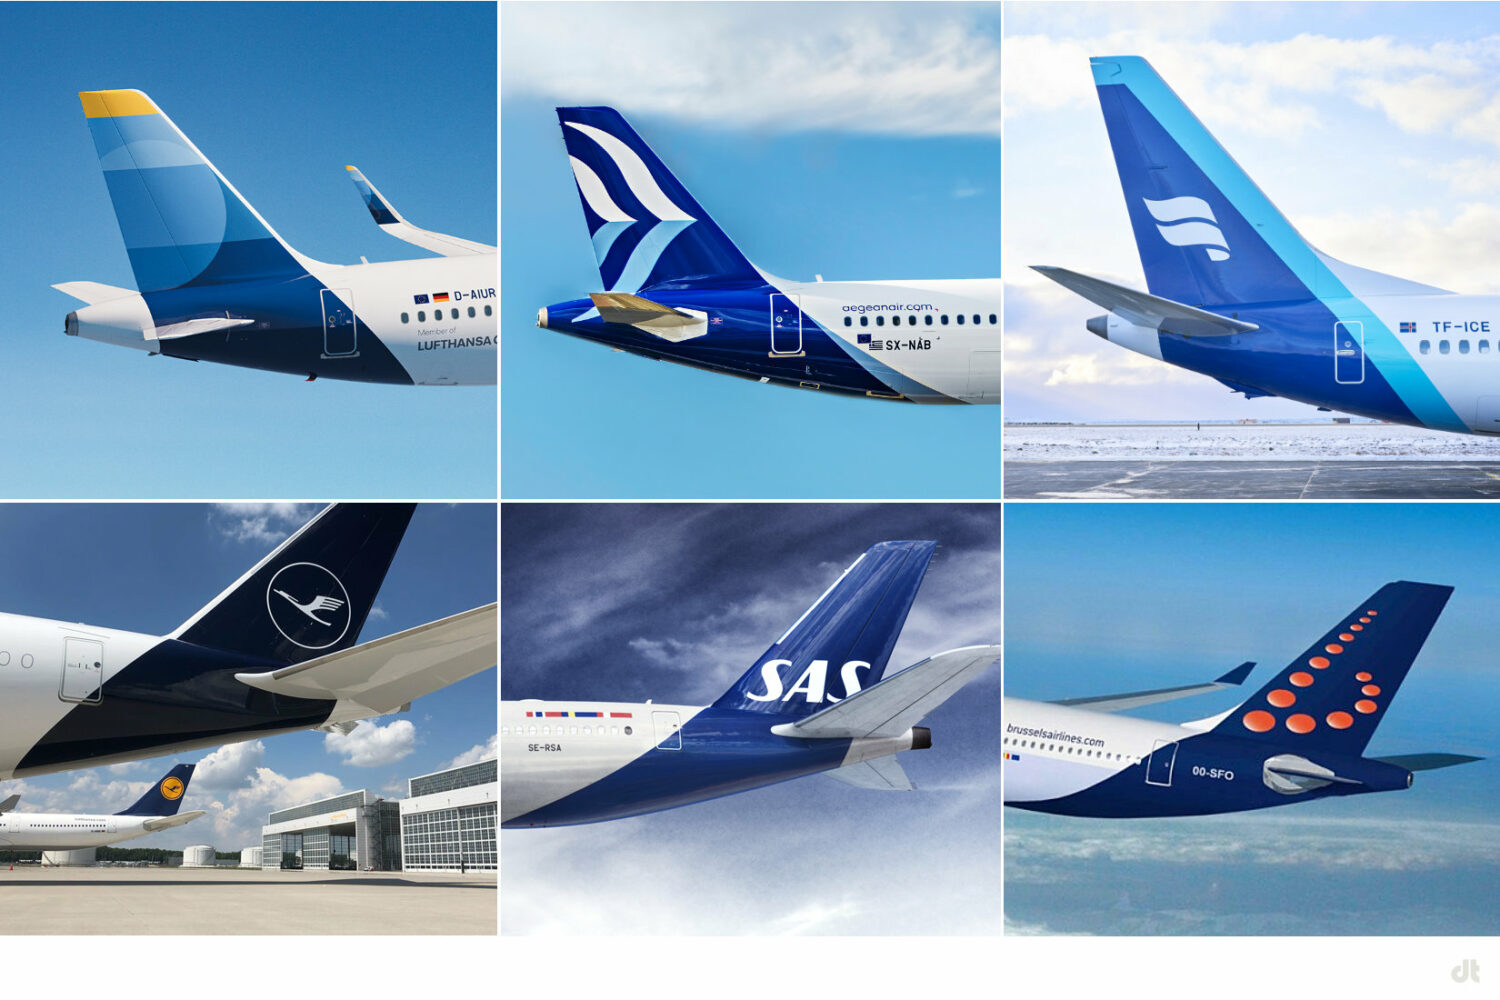 Airlines mit dunkelblauer Gestaltung, die Seitenleitwerk und Rumpf einschließt, Bildquelle: Discover Airlines, Aegean, Lufthansa, SAS, Brussels Airline, Icelandair, Bildmontage: dt